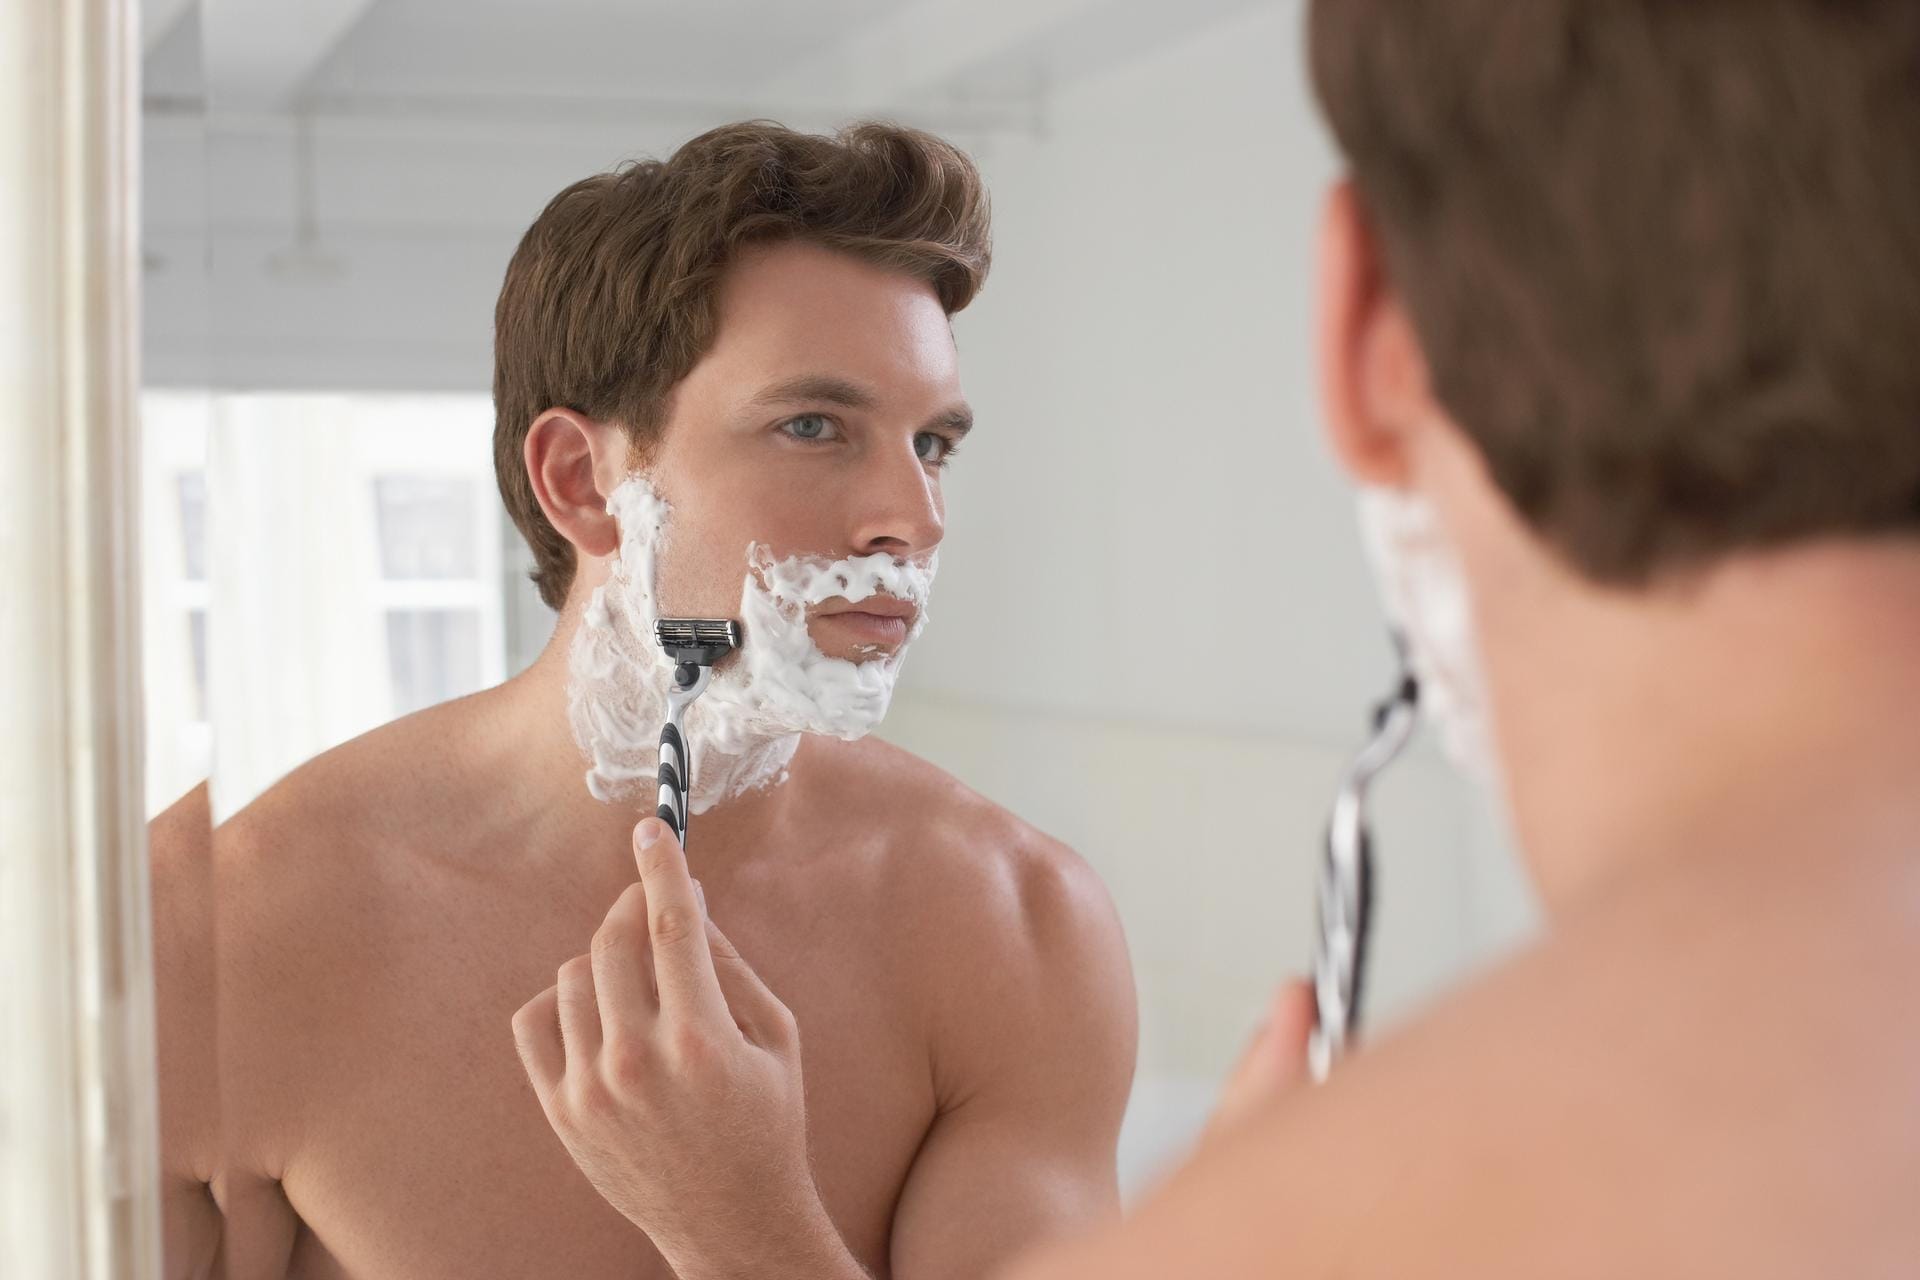 Fehler: Morgens schnell rasieren. Besser vor dem Schlafengehen rasieren. So kann sich die Haut über Nacht beruhigen und kleine Schnittwunden heilen.